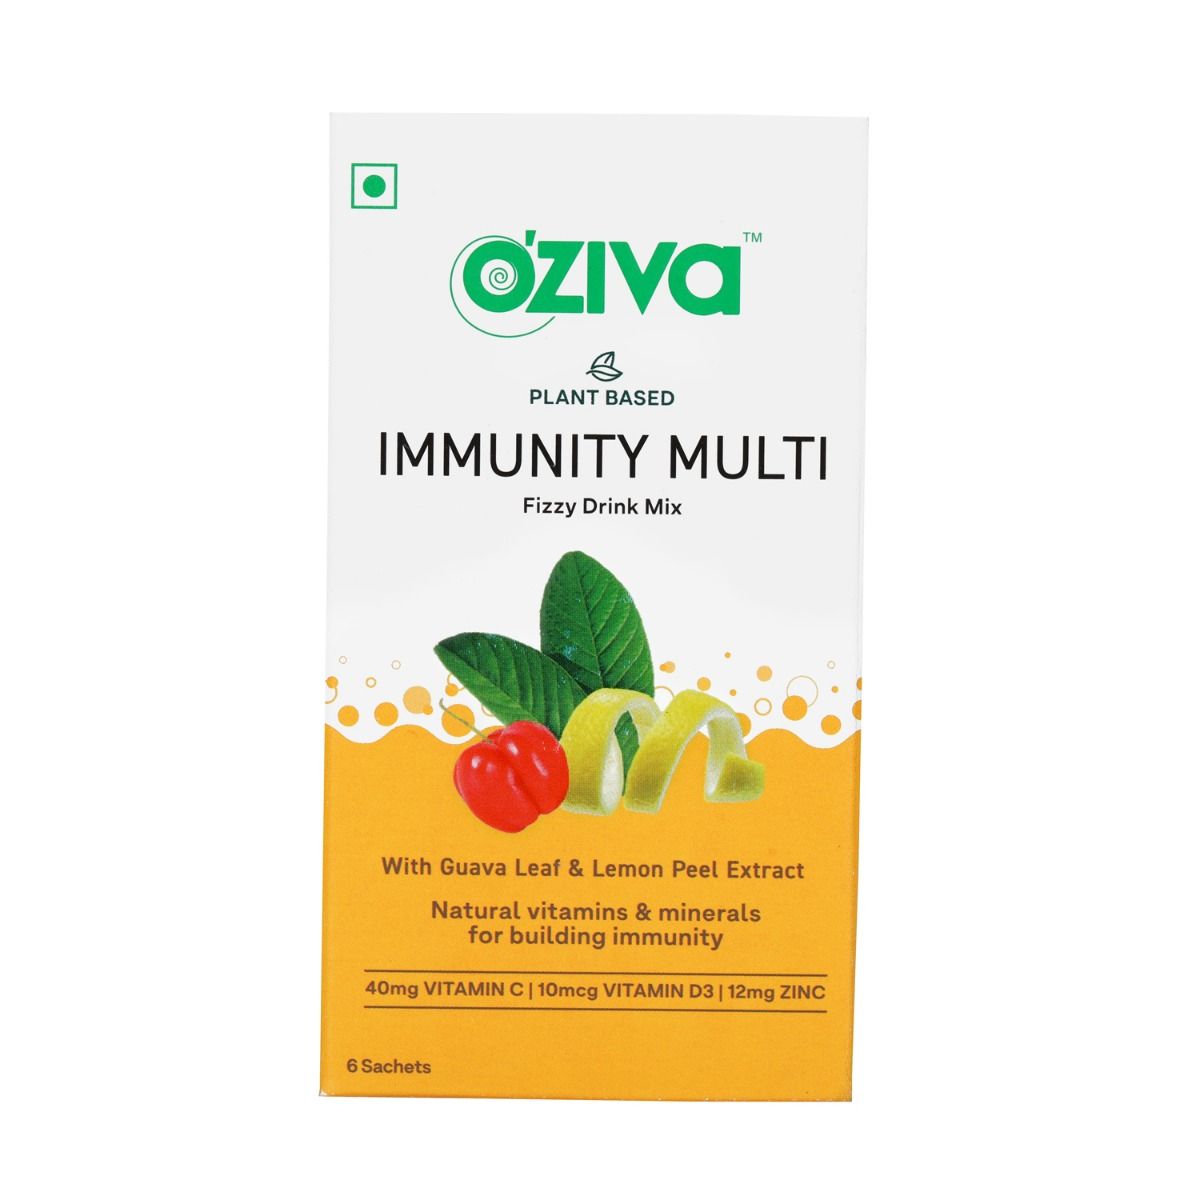 OZiva Immunity Multi Fizzy Drink, 6 Sachets (6x4 gm), Pack of 1 